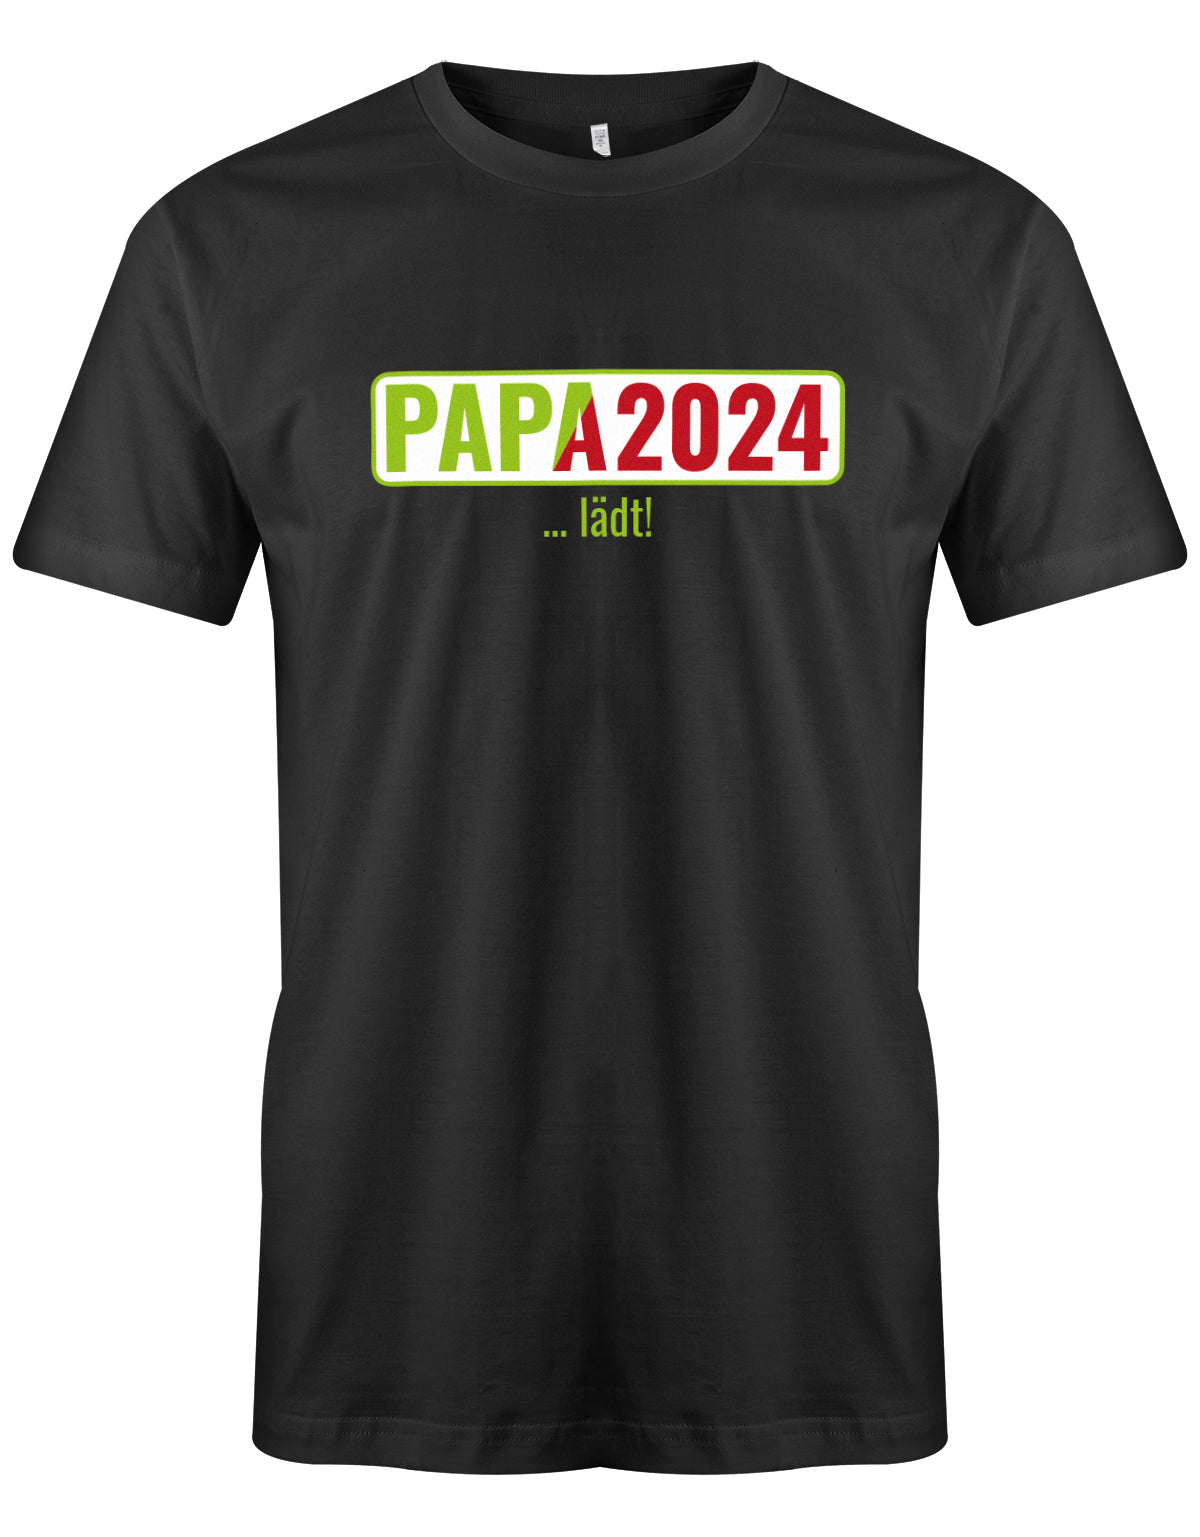 Papa 2024 lädt - loading - Werdender Papa Shirt Herren Schwarz